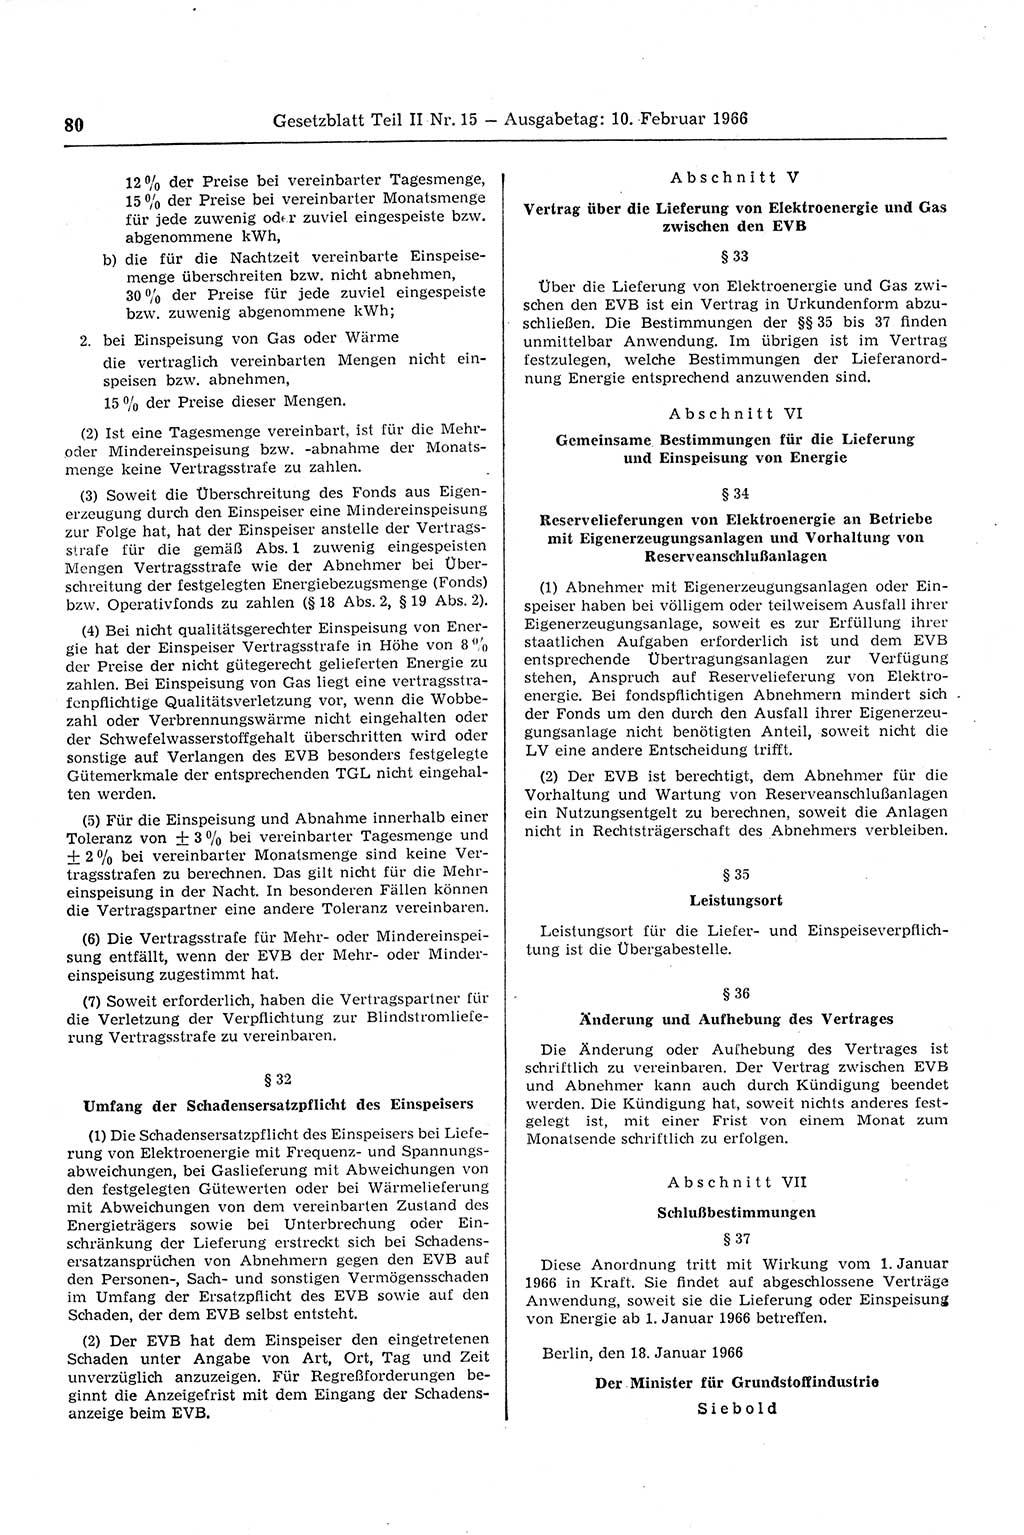 Gesetzblatt (GBl.) der Deutschen Demokratischen Republik (DDR) Teil ⅠⅠ 1966, Seite 80 (GBl. DDR ⅠⅠ 1966, S. 80)